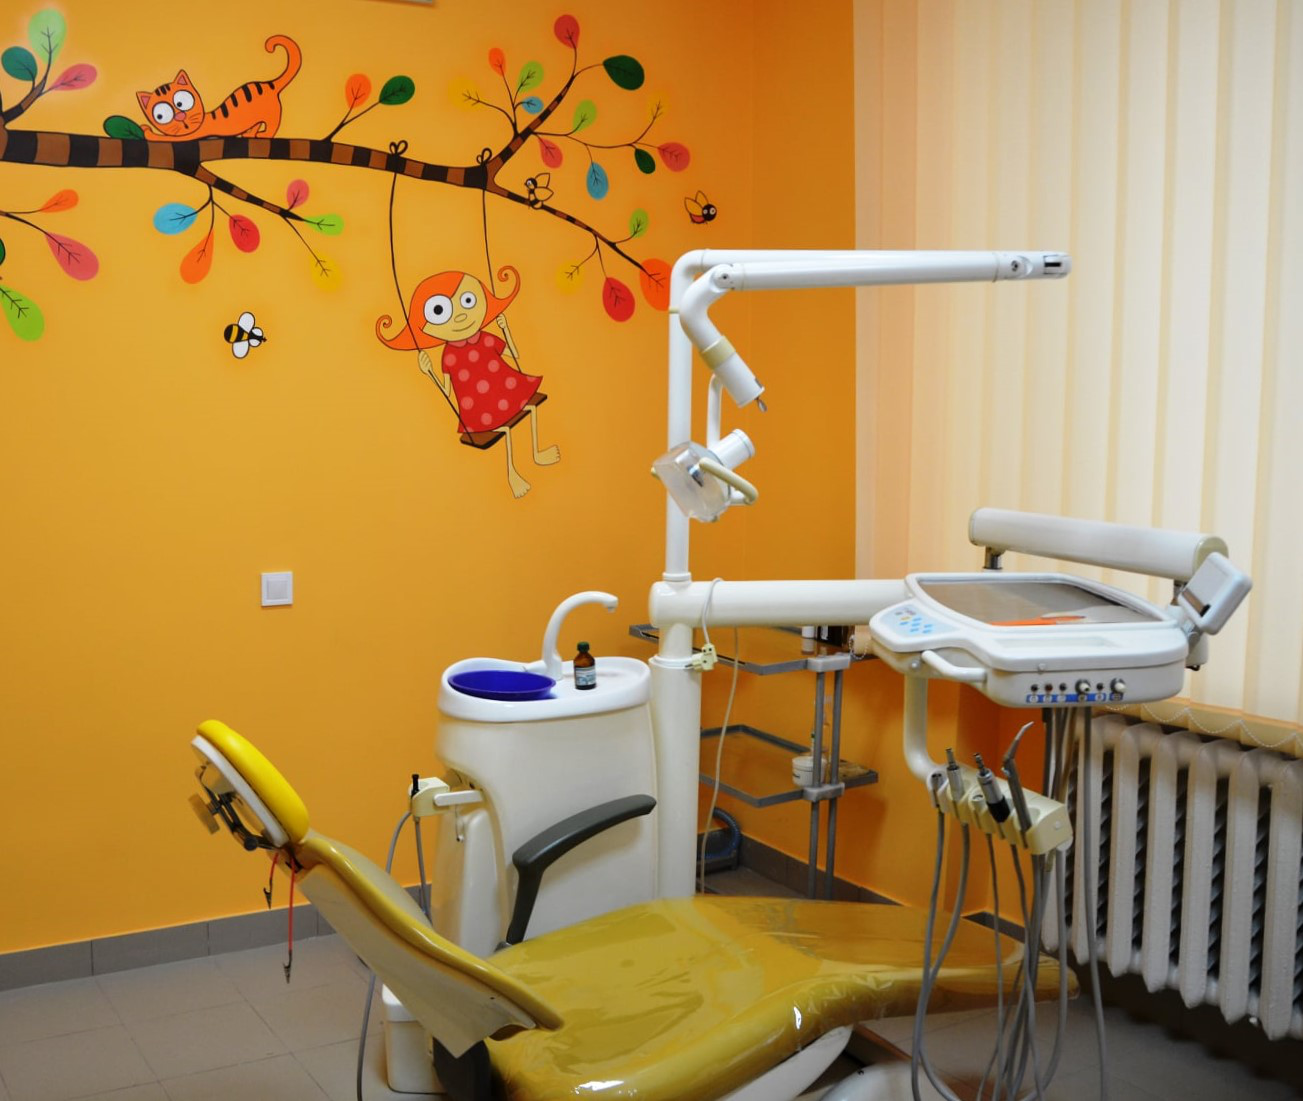 Відділ стоматології в Луцькій міській дитячій поліклініці тепер з генератором (фото)